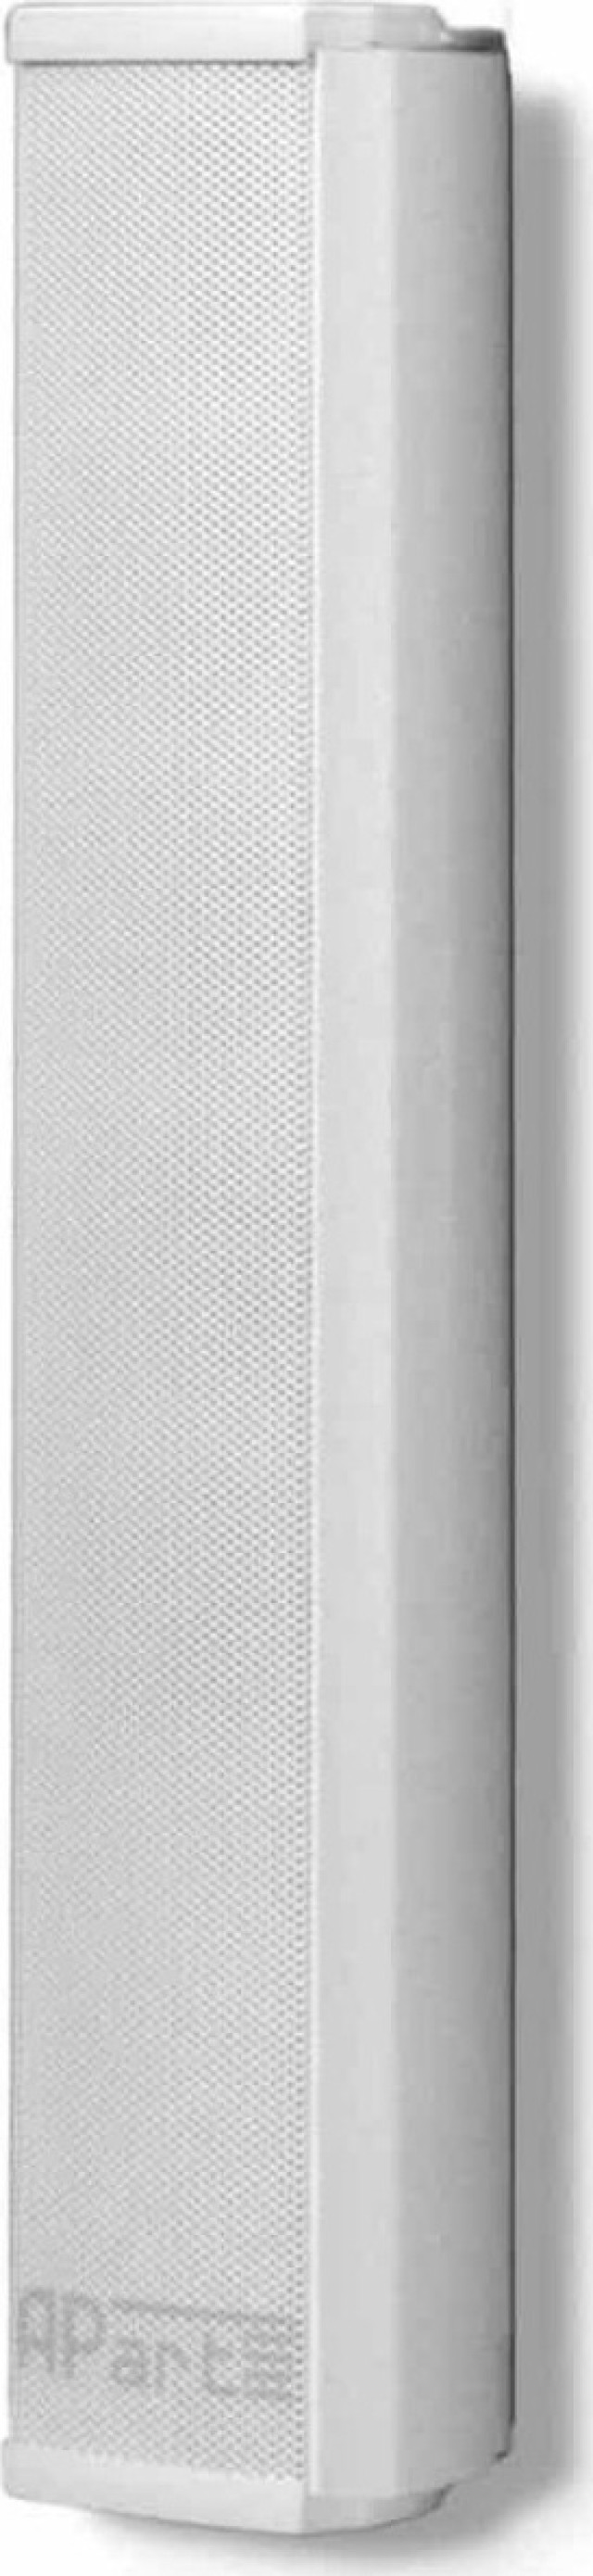 APART COLS-41 Speaker 100V/20W White (Unit)